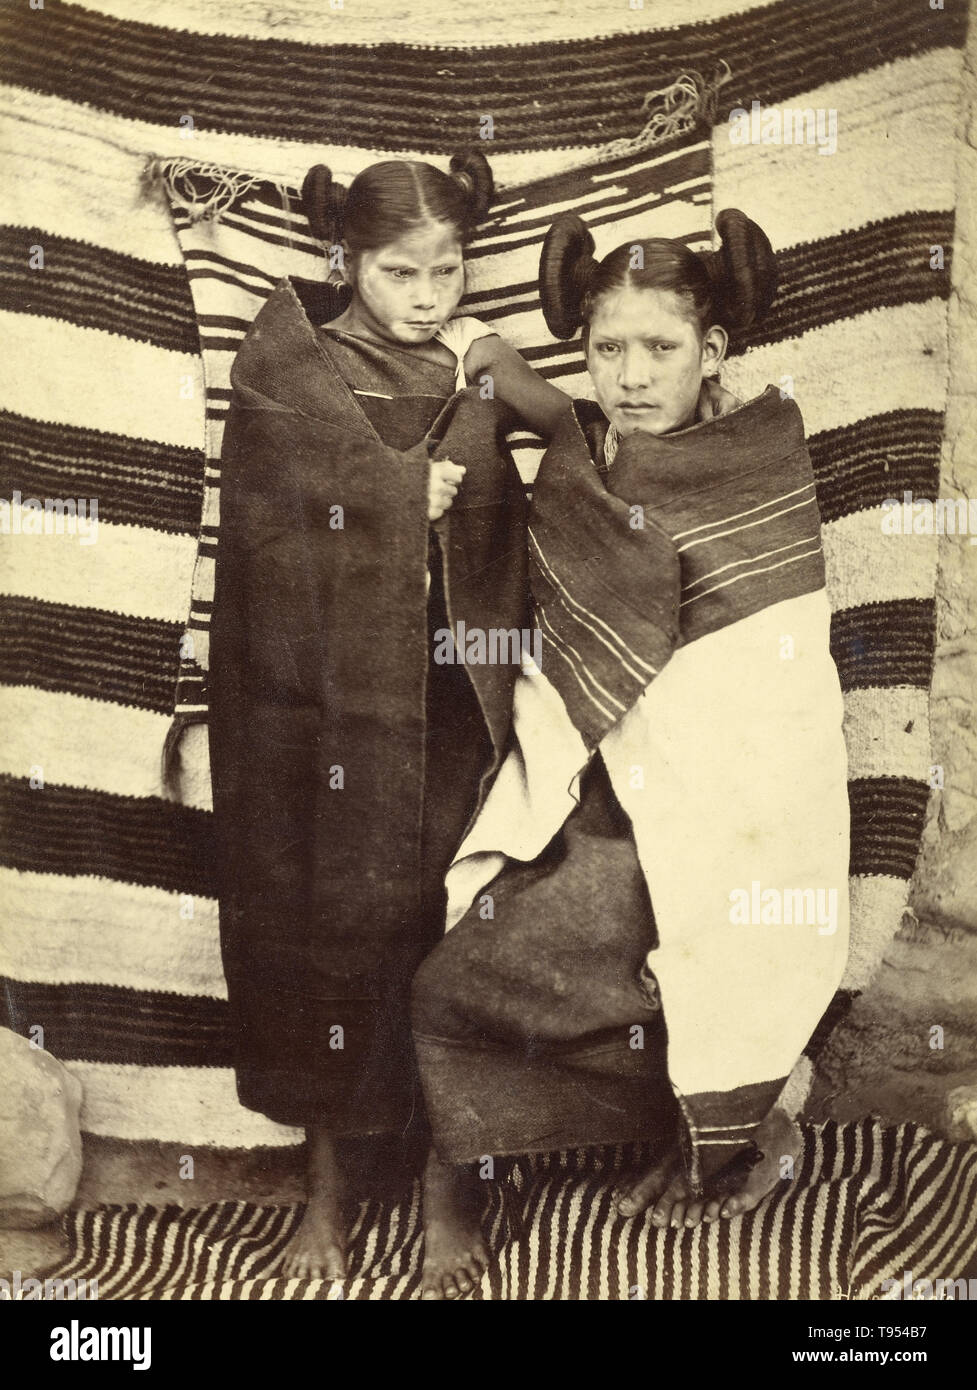 Hopi Mädchen in traditioneller Kleidung, von John K. Hillers (American, 1843 - 1925) im Jahre 1879 übernommen. Eiklar Silber drucken. Die Hopi sind ein Indianer Stamm, der in erster Linie auf die Hopi Reservation im nordöstlichen Arizona leben. Laut der Volkszählung von 2010 gab es 19,327 Hopi in den Vereinigten Staaten. Stockfoto